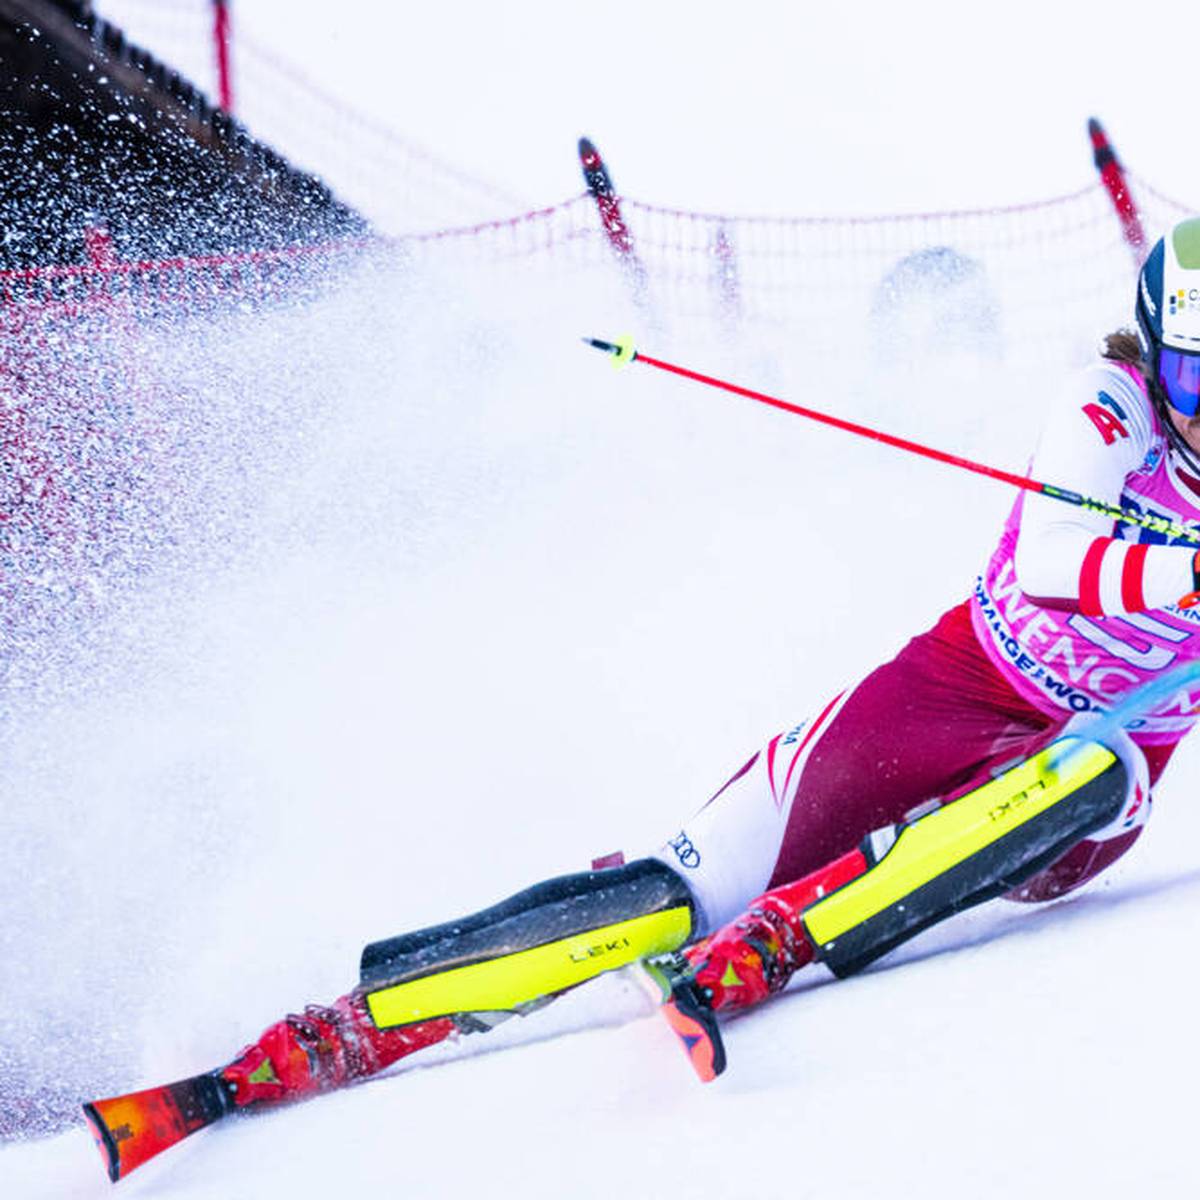 Der österreichische Skirennläufer Manuel Feller ist positiv auf Corona getestet worden. Der WM-Zweite von 2017 befindet sich in Isolation.